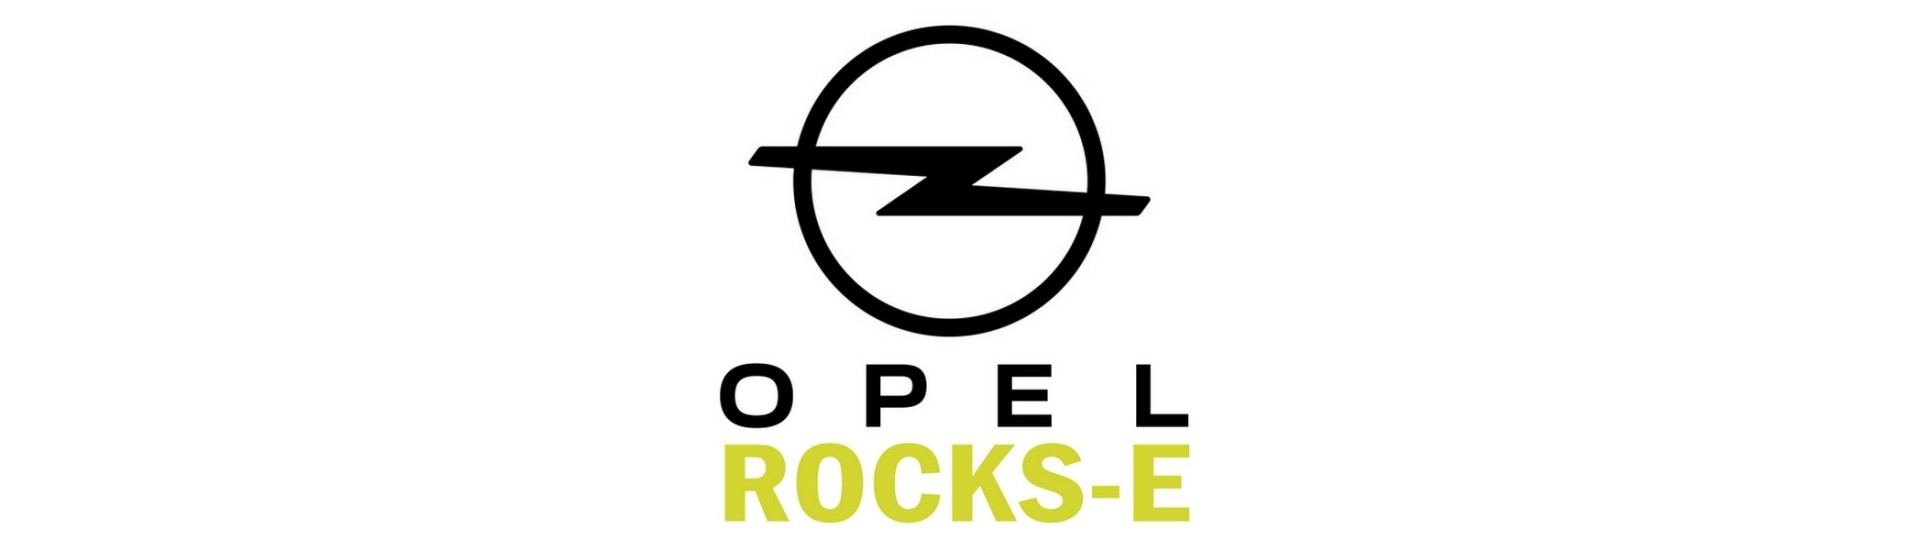 Support et cache commodo voiture sans permis Opel Rocks-E